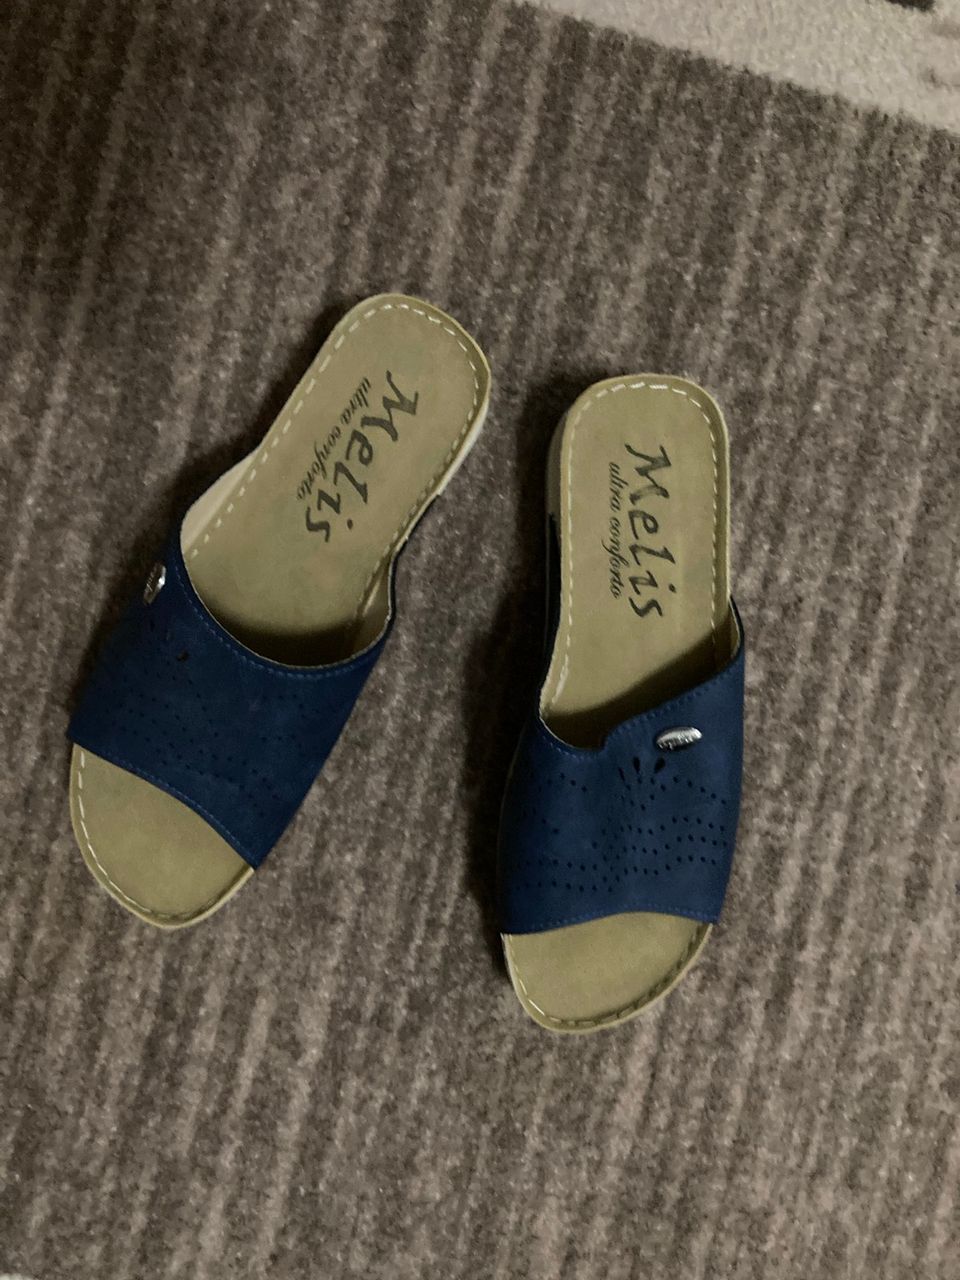 Naisten sandaalit/kengät (uudet)